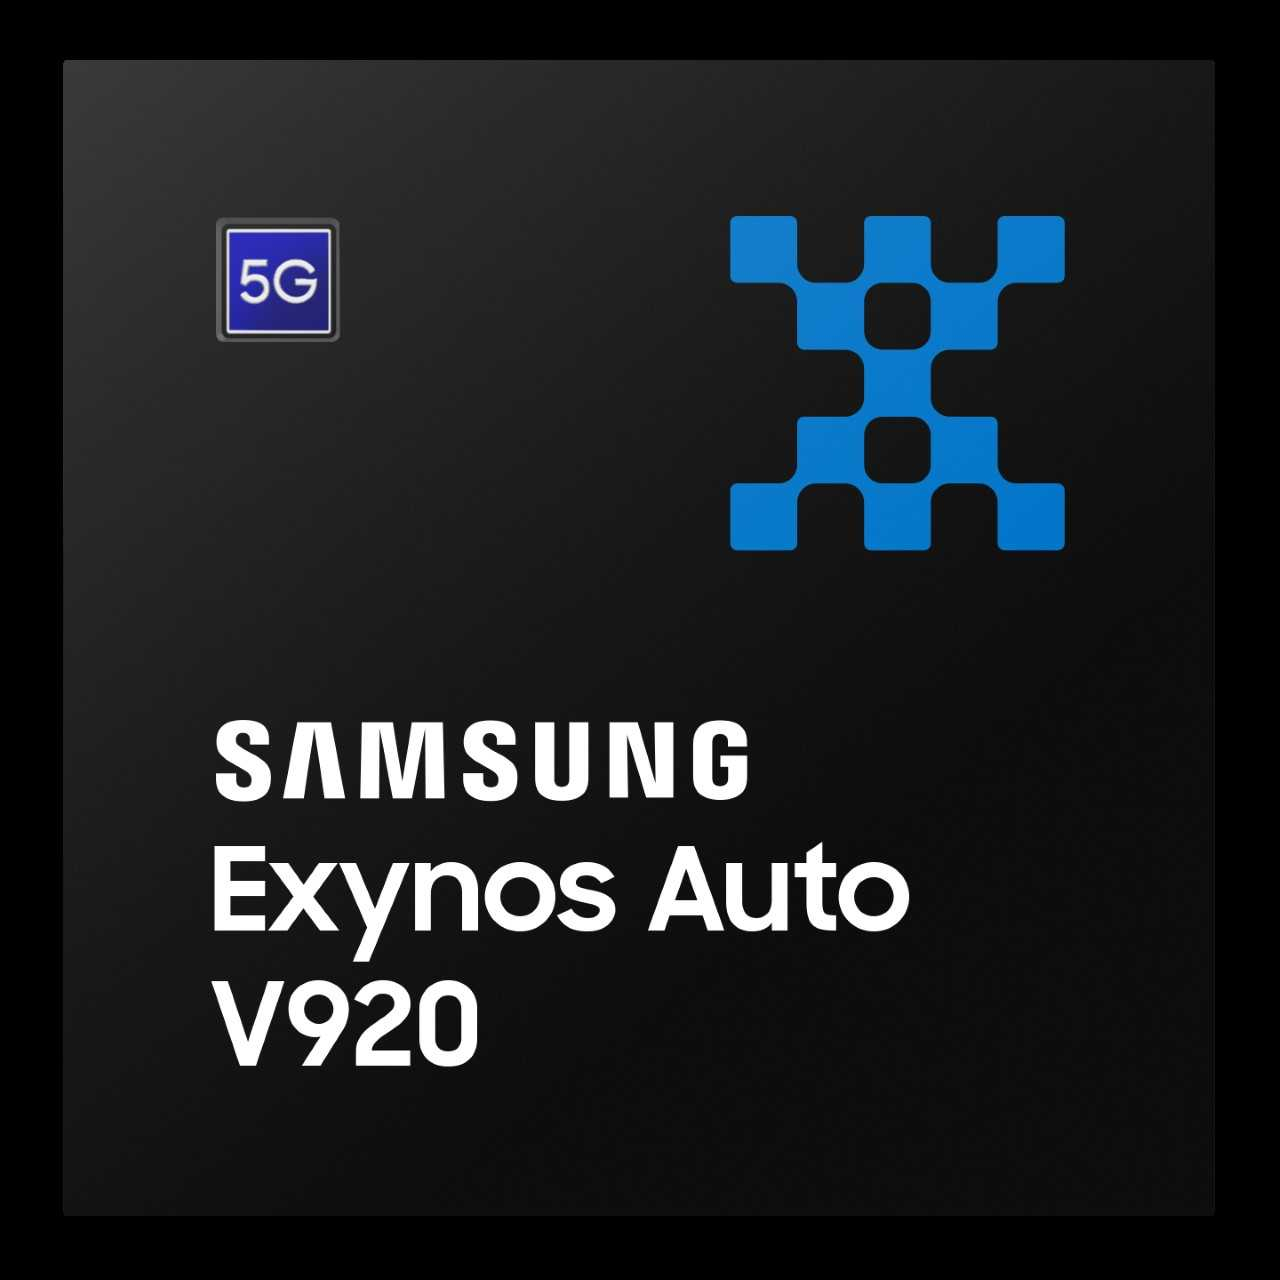 Samsung's Exynos Auto V920 processor (Samsung Electronics)